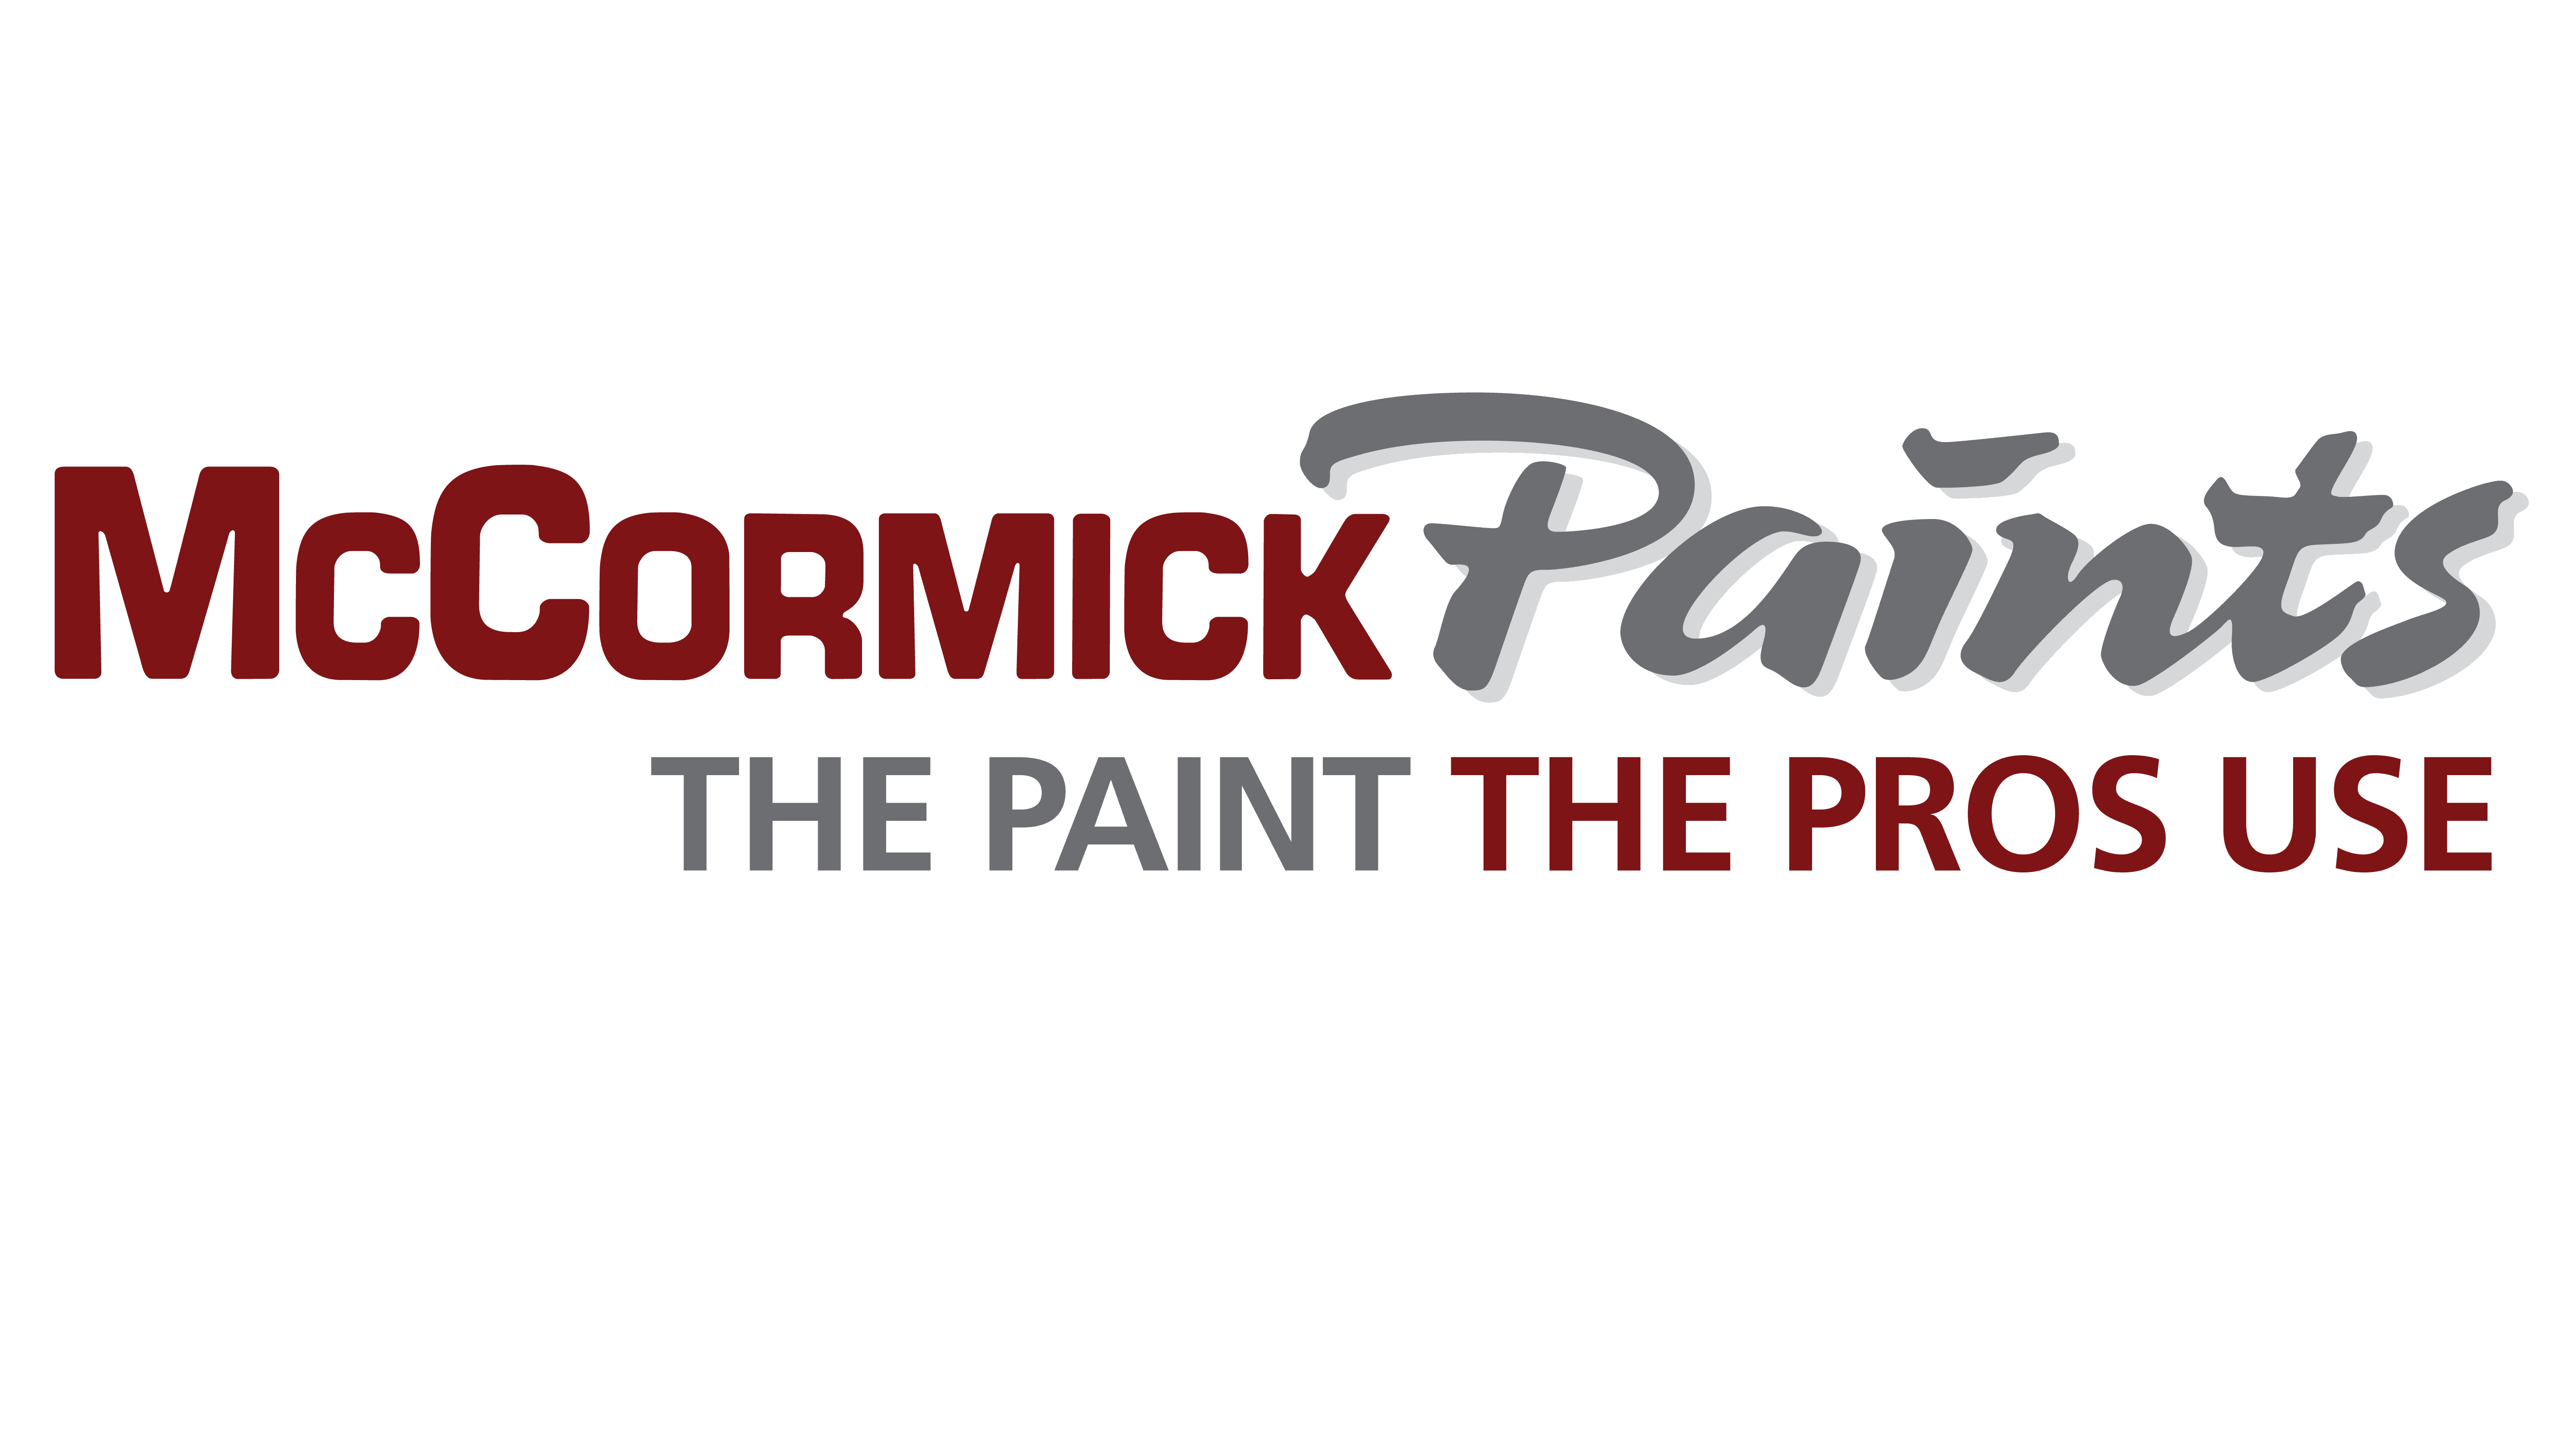 McCormick Paints